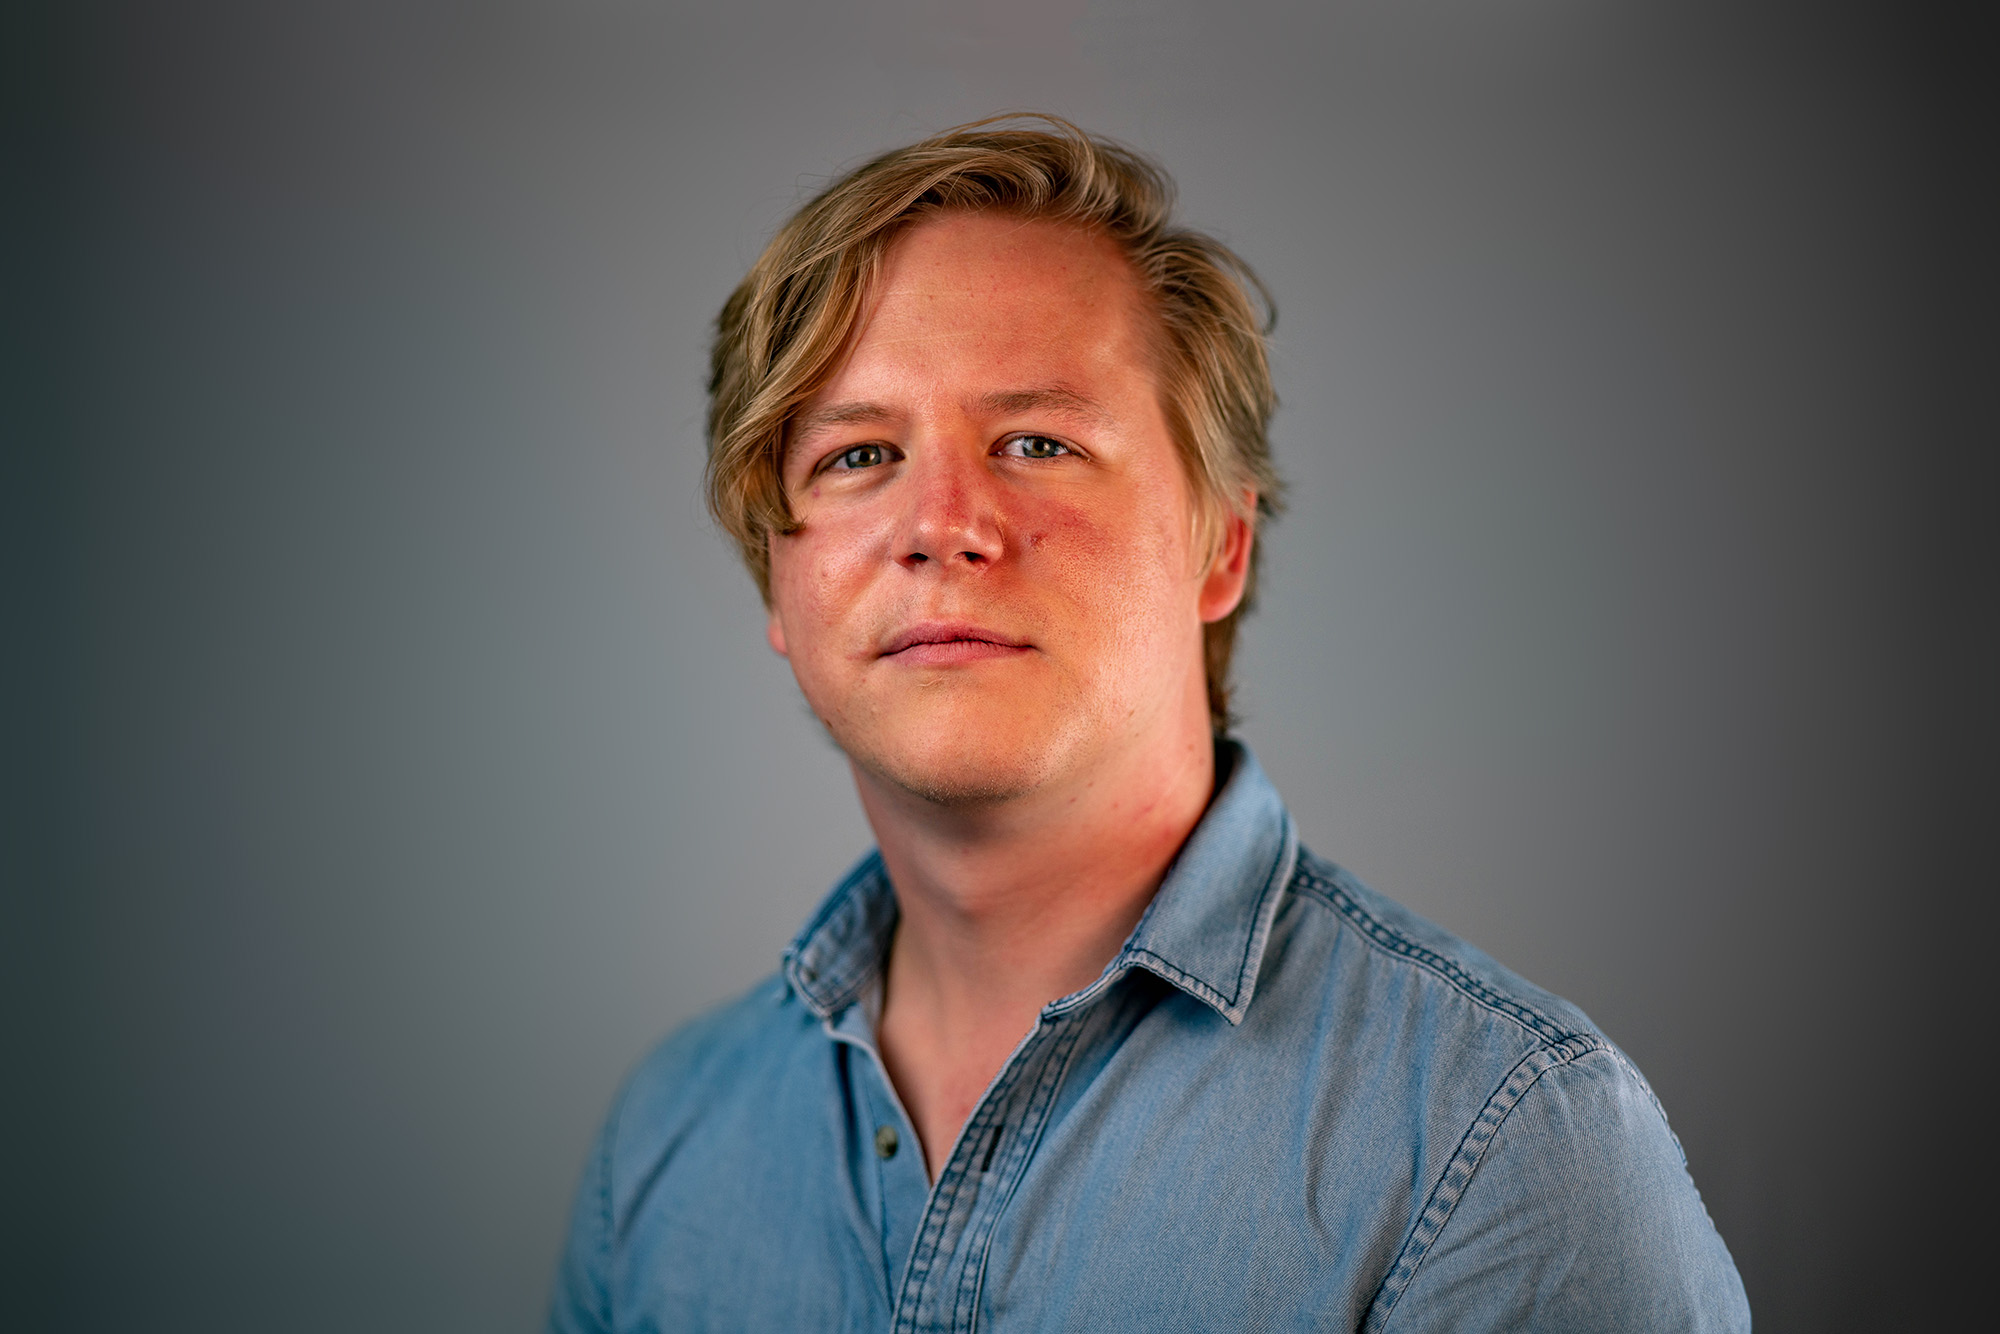 Das Profilbild vom Geschäftsführer und Frontend-Entwickler Jan Schwarz